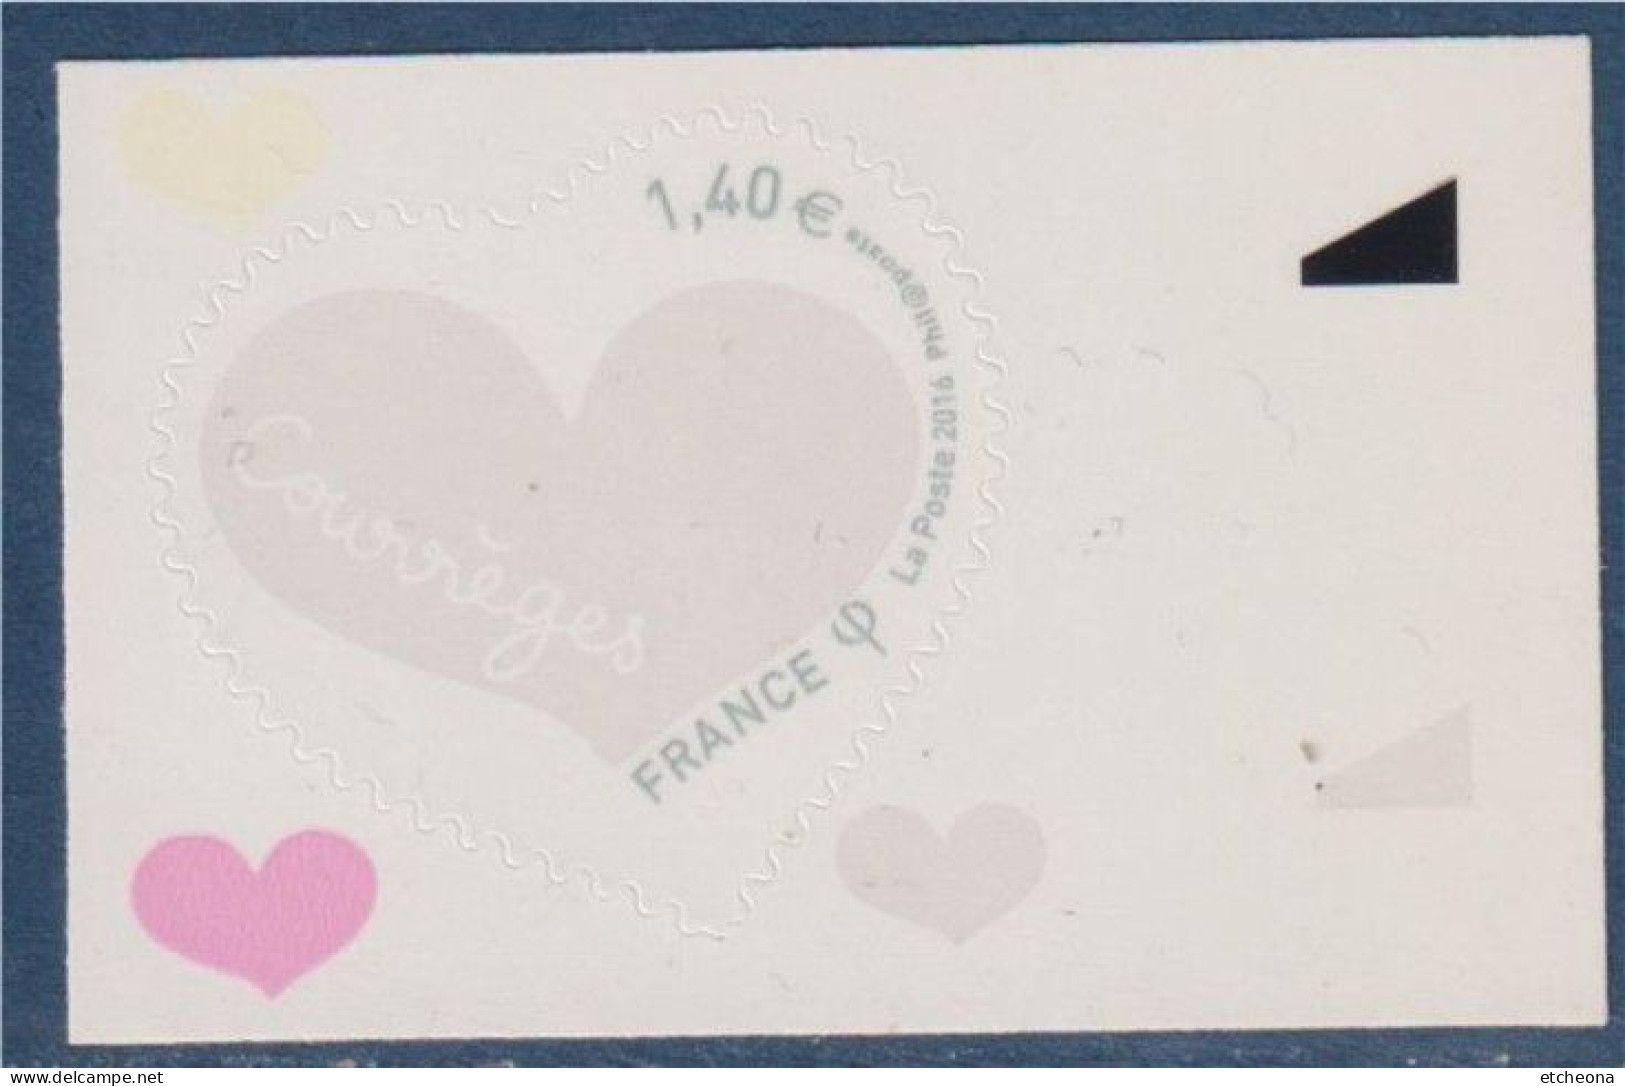 Coeur Saint Valentin 2016 De Courrèges 1.40€ Adhésif Neuf N° 1231 Avec Bord De Feuille - Neufs